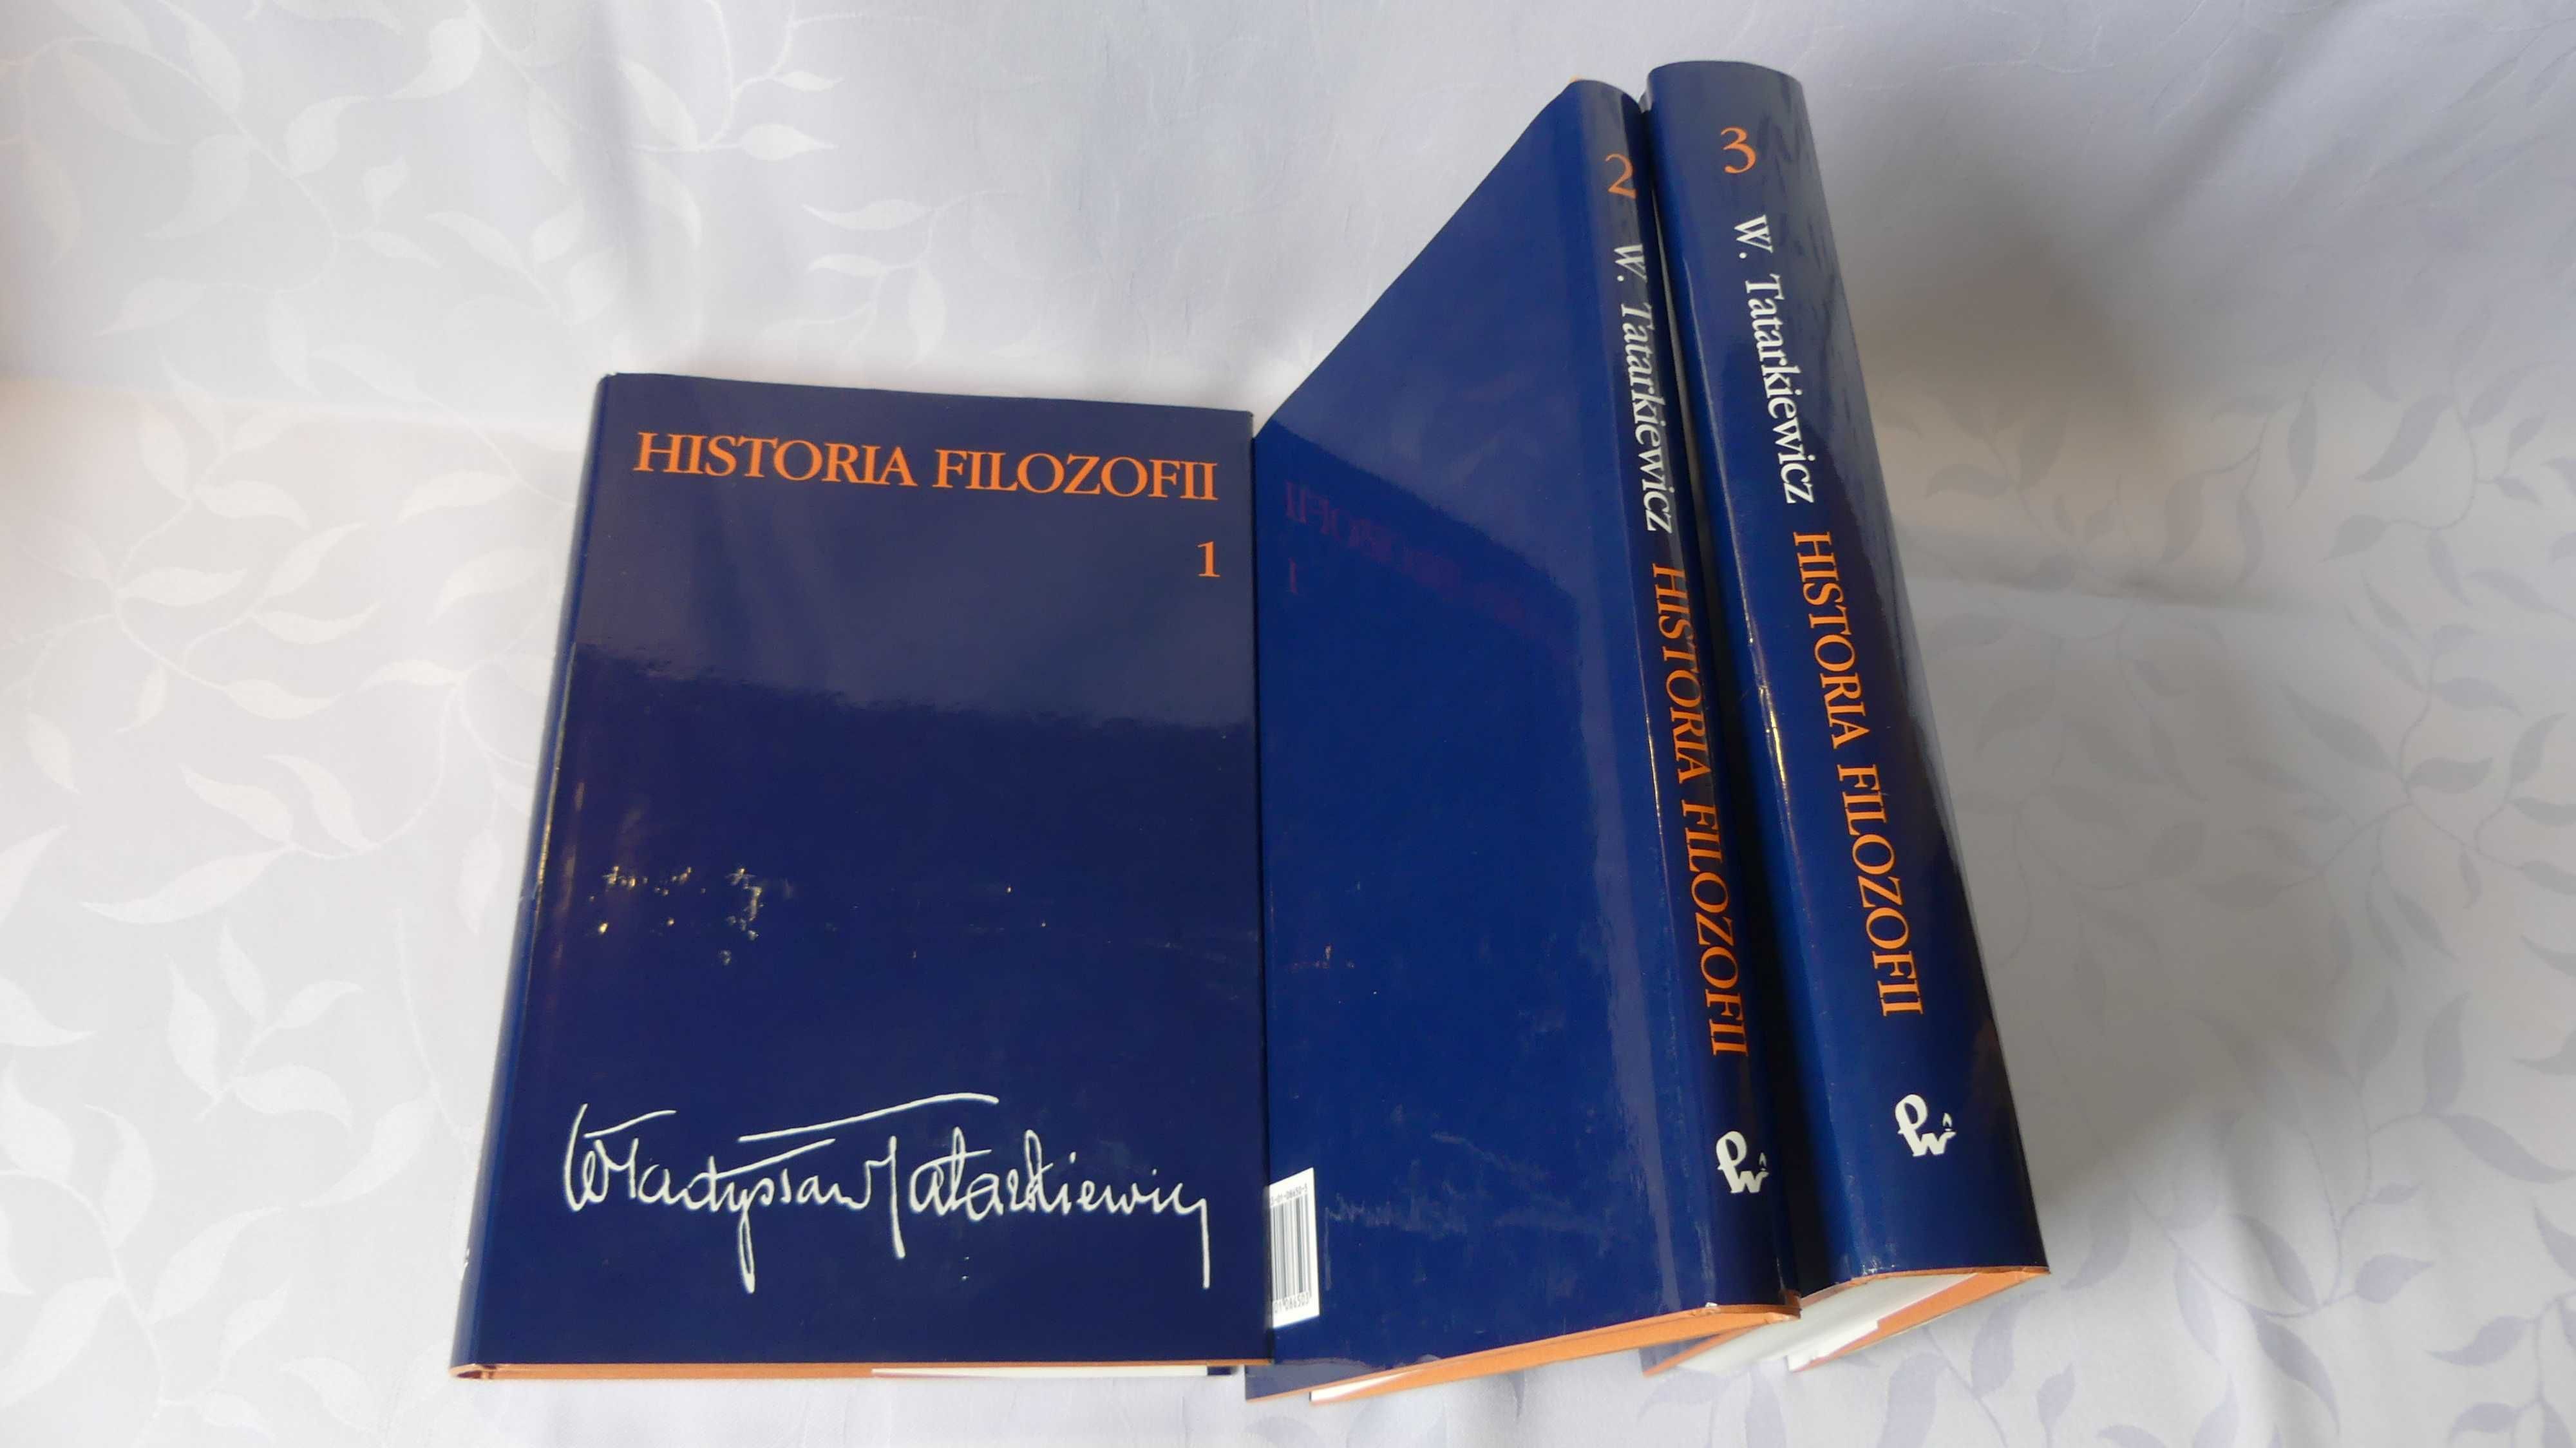 Historia Filozofii, Władysław Tatarkiewicz - wszystkie tomy, tom 1,2,3